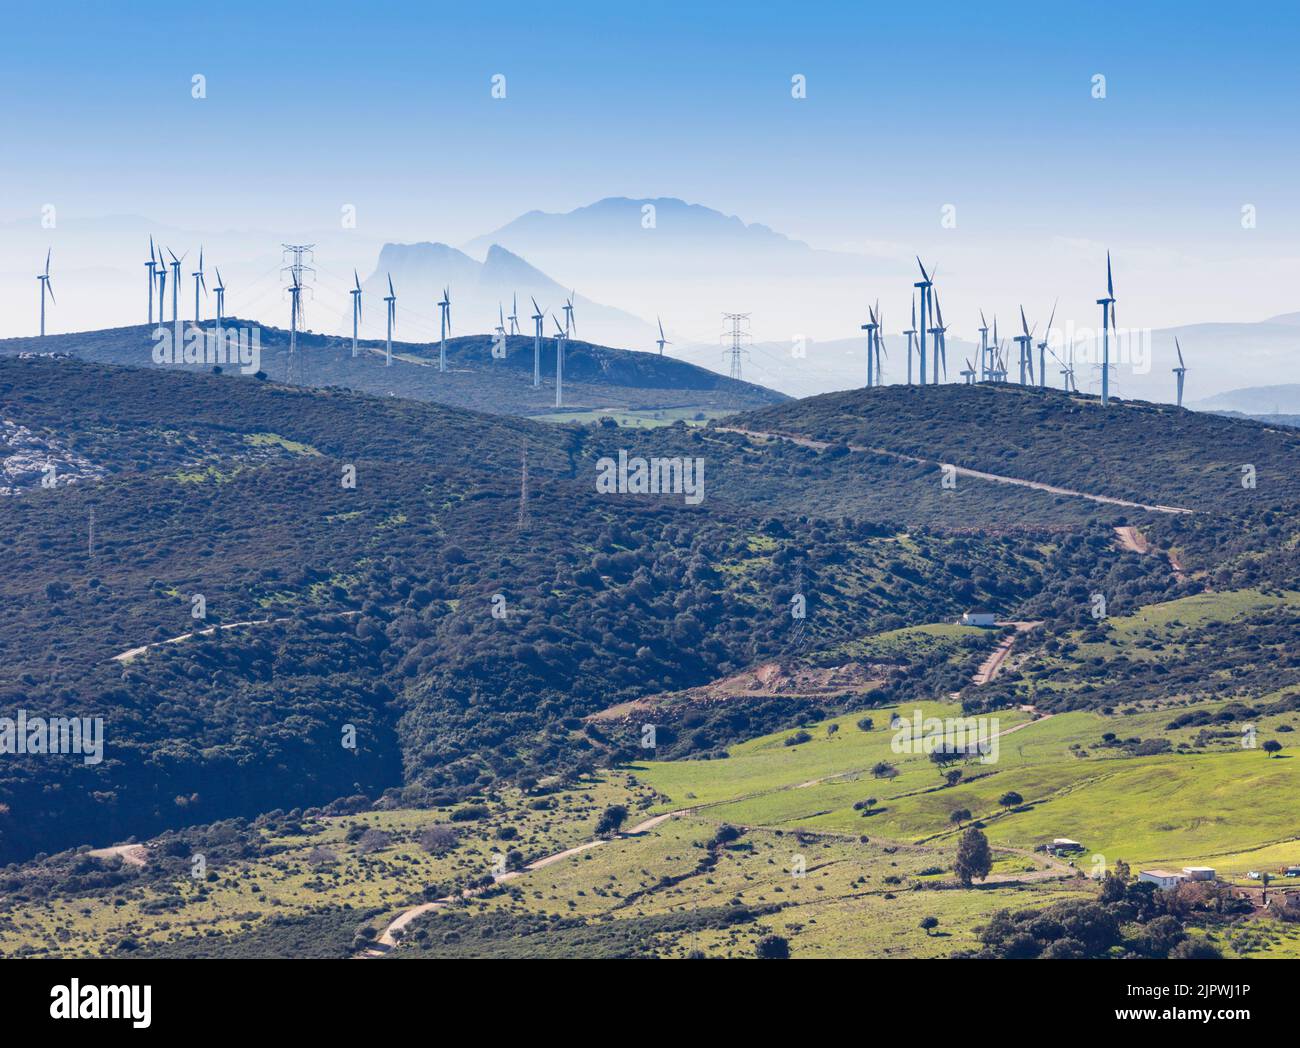 Los pilares de Hércules. Molinos de viento, Gibraltar y Marruecos en África Visto desde Casares, provincia de Málaga, Andalucía, sur de España. Gibraltar está detrás Foto de stock